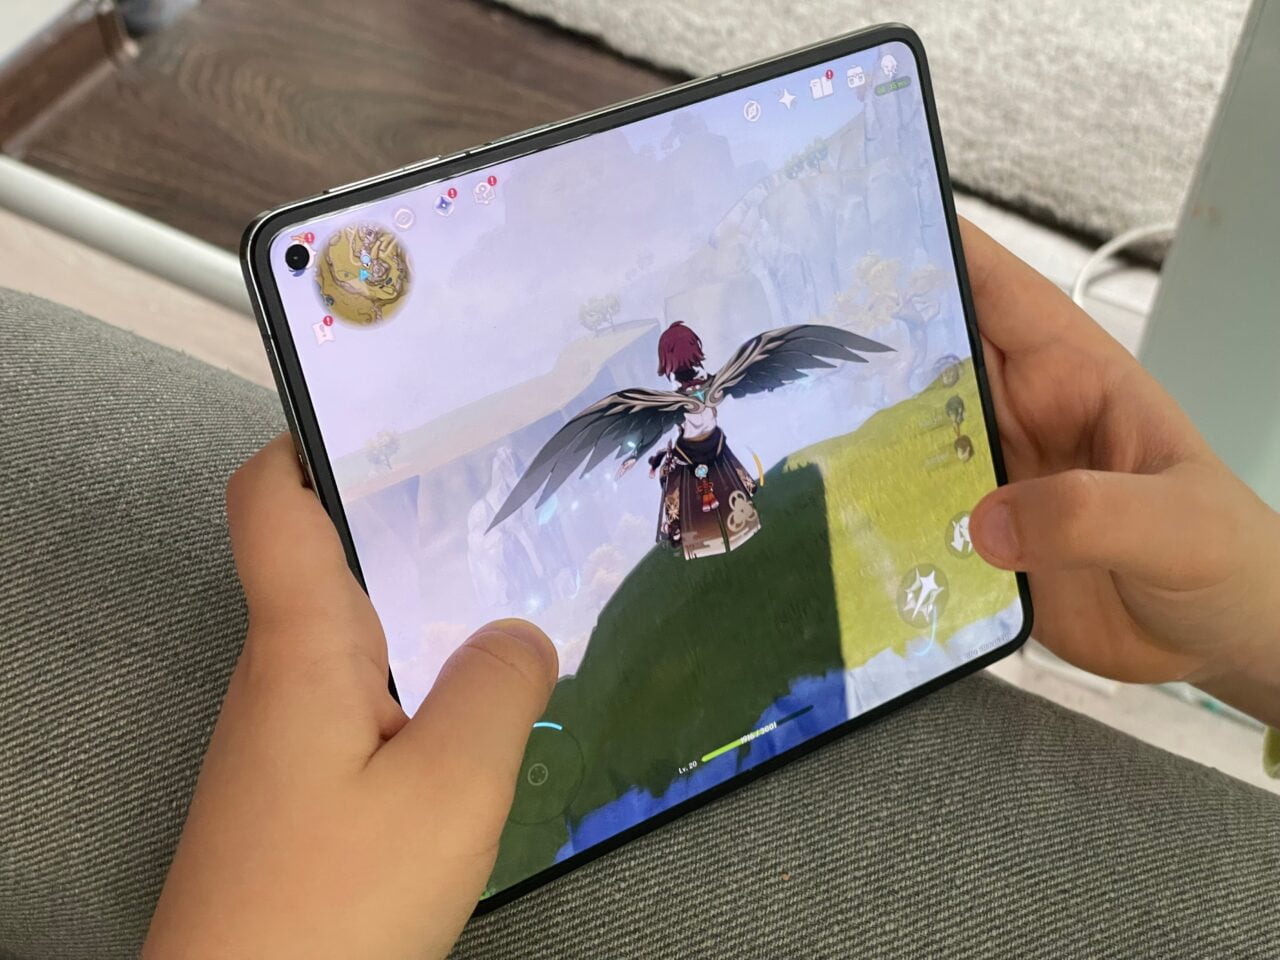 Dziecko trzyma tablet z wyświetlaną grą, na ekranie postać z czarnymi skrzydłami przelatuje nad zielonym terenem w wirtualnym świecie.  recenzja oneplus open, genshin impact